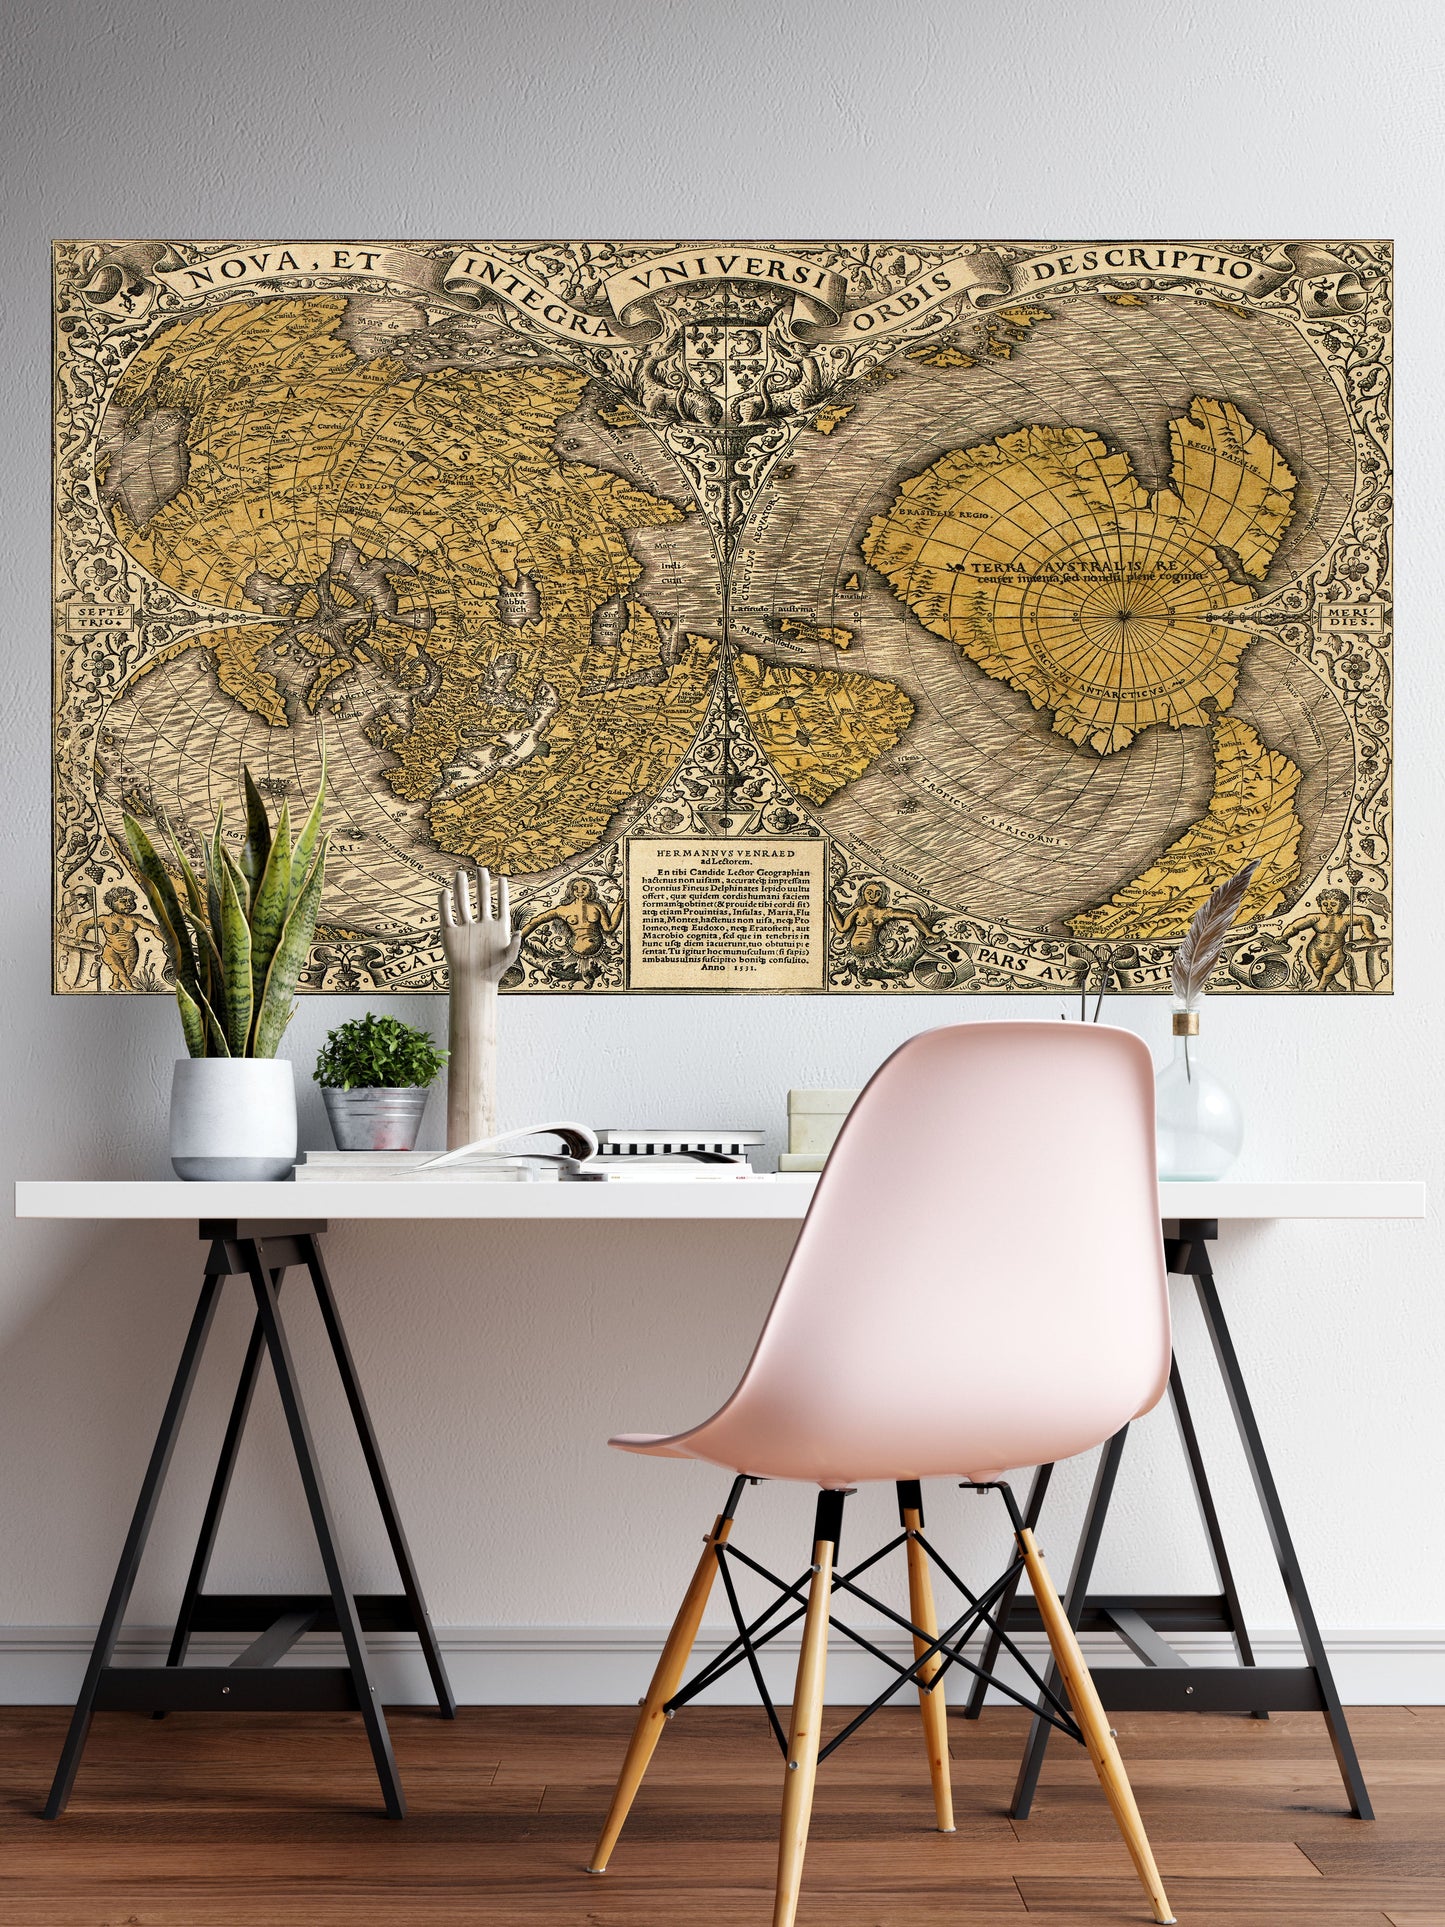 Vintage Antique World Map Wall Mural. Noua, et integra uniuersi orbis descriptio (1531) by Oronce Finé. #6352